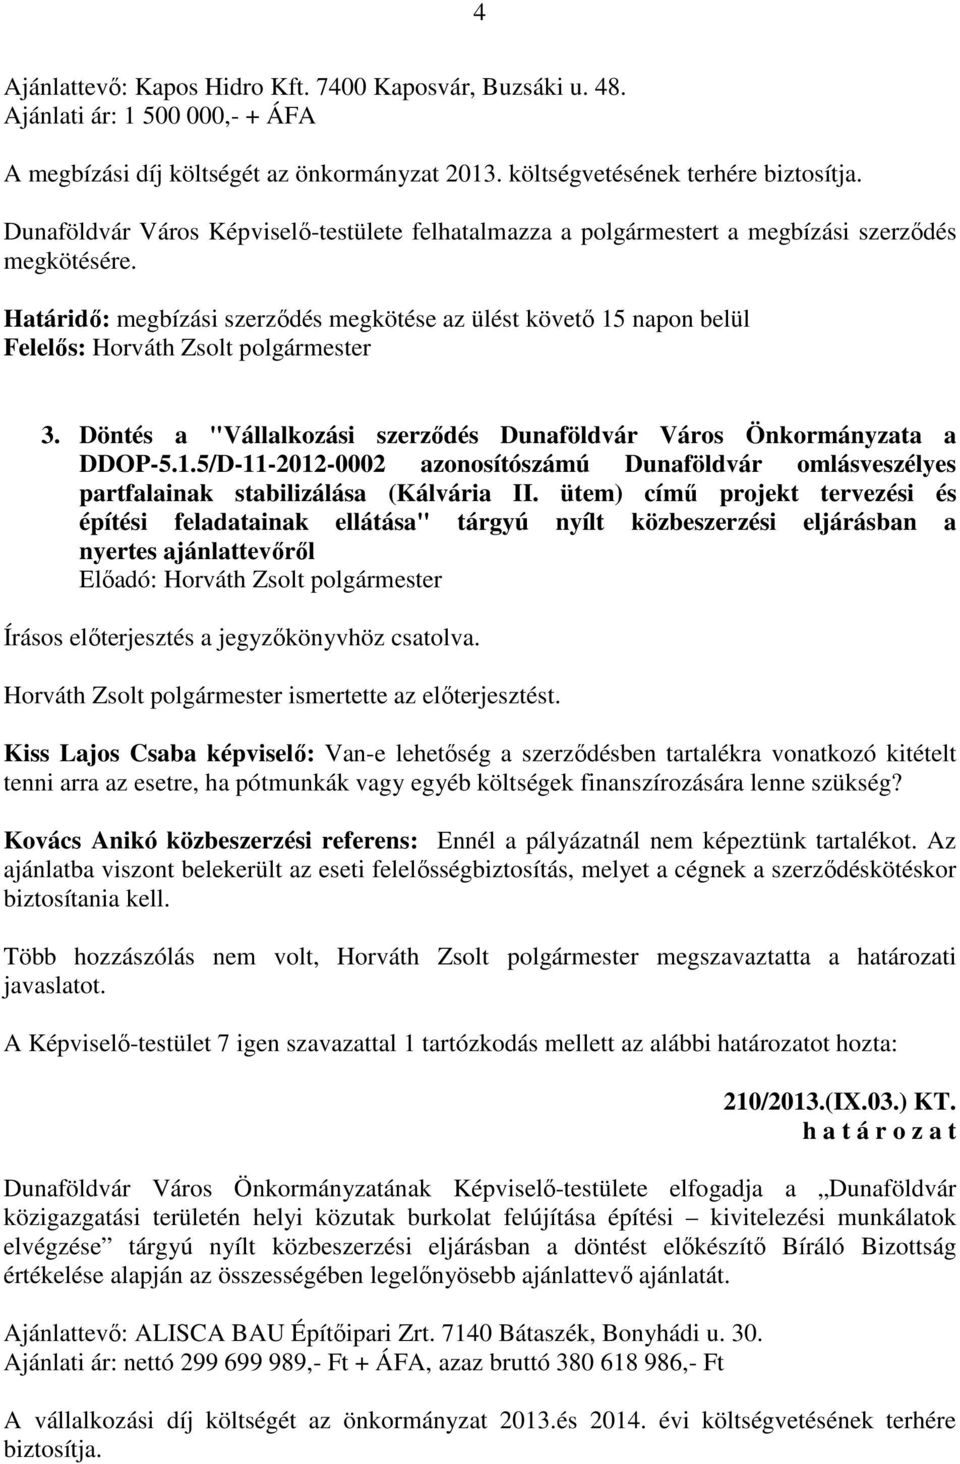 Döntés a "Vállalkozási szerződés Dunaföldvár Város Önkormányzata a DDOP-5.1.5/D-11-2012-0002 azonosítószámú Dunaföldvár omlásveszélyes partfalainak stabilizálása (Kálvária II.